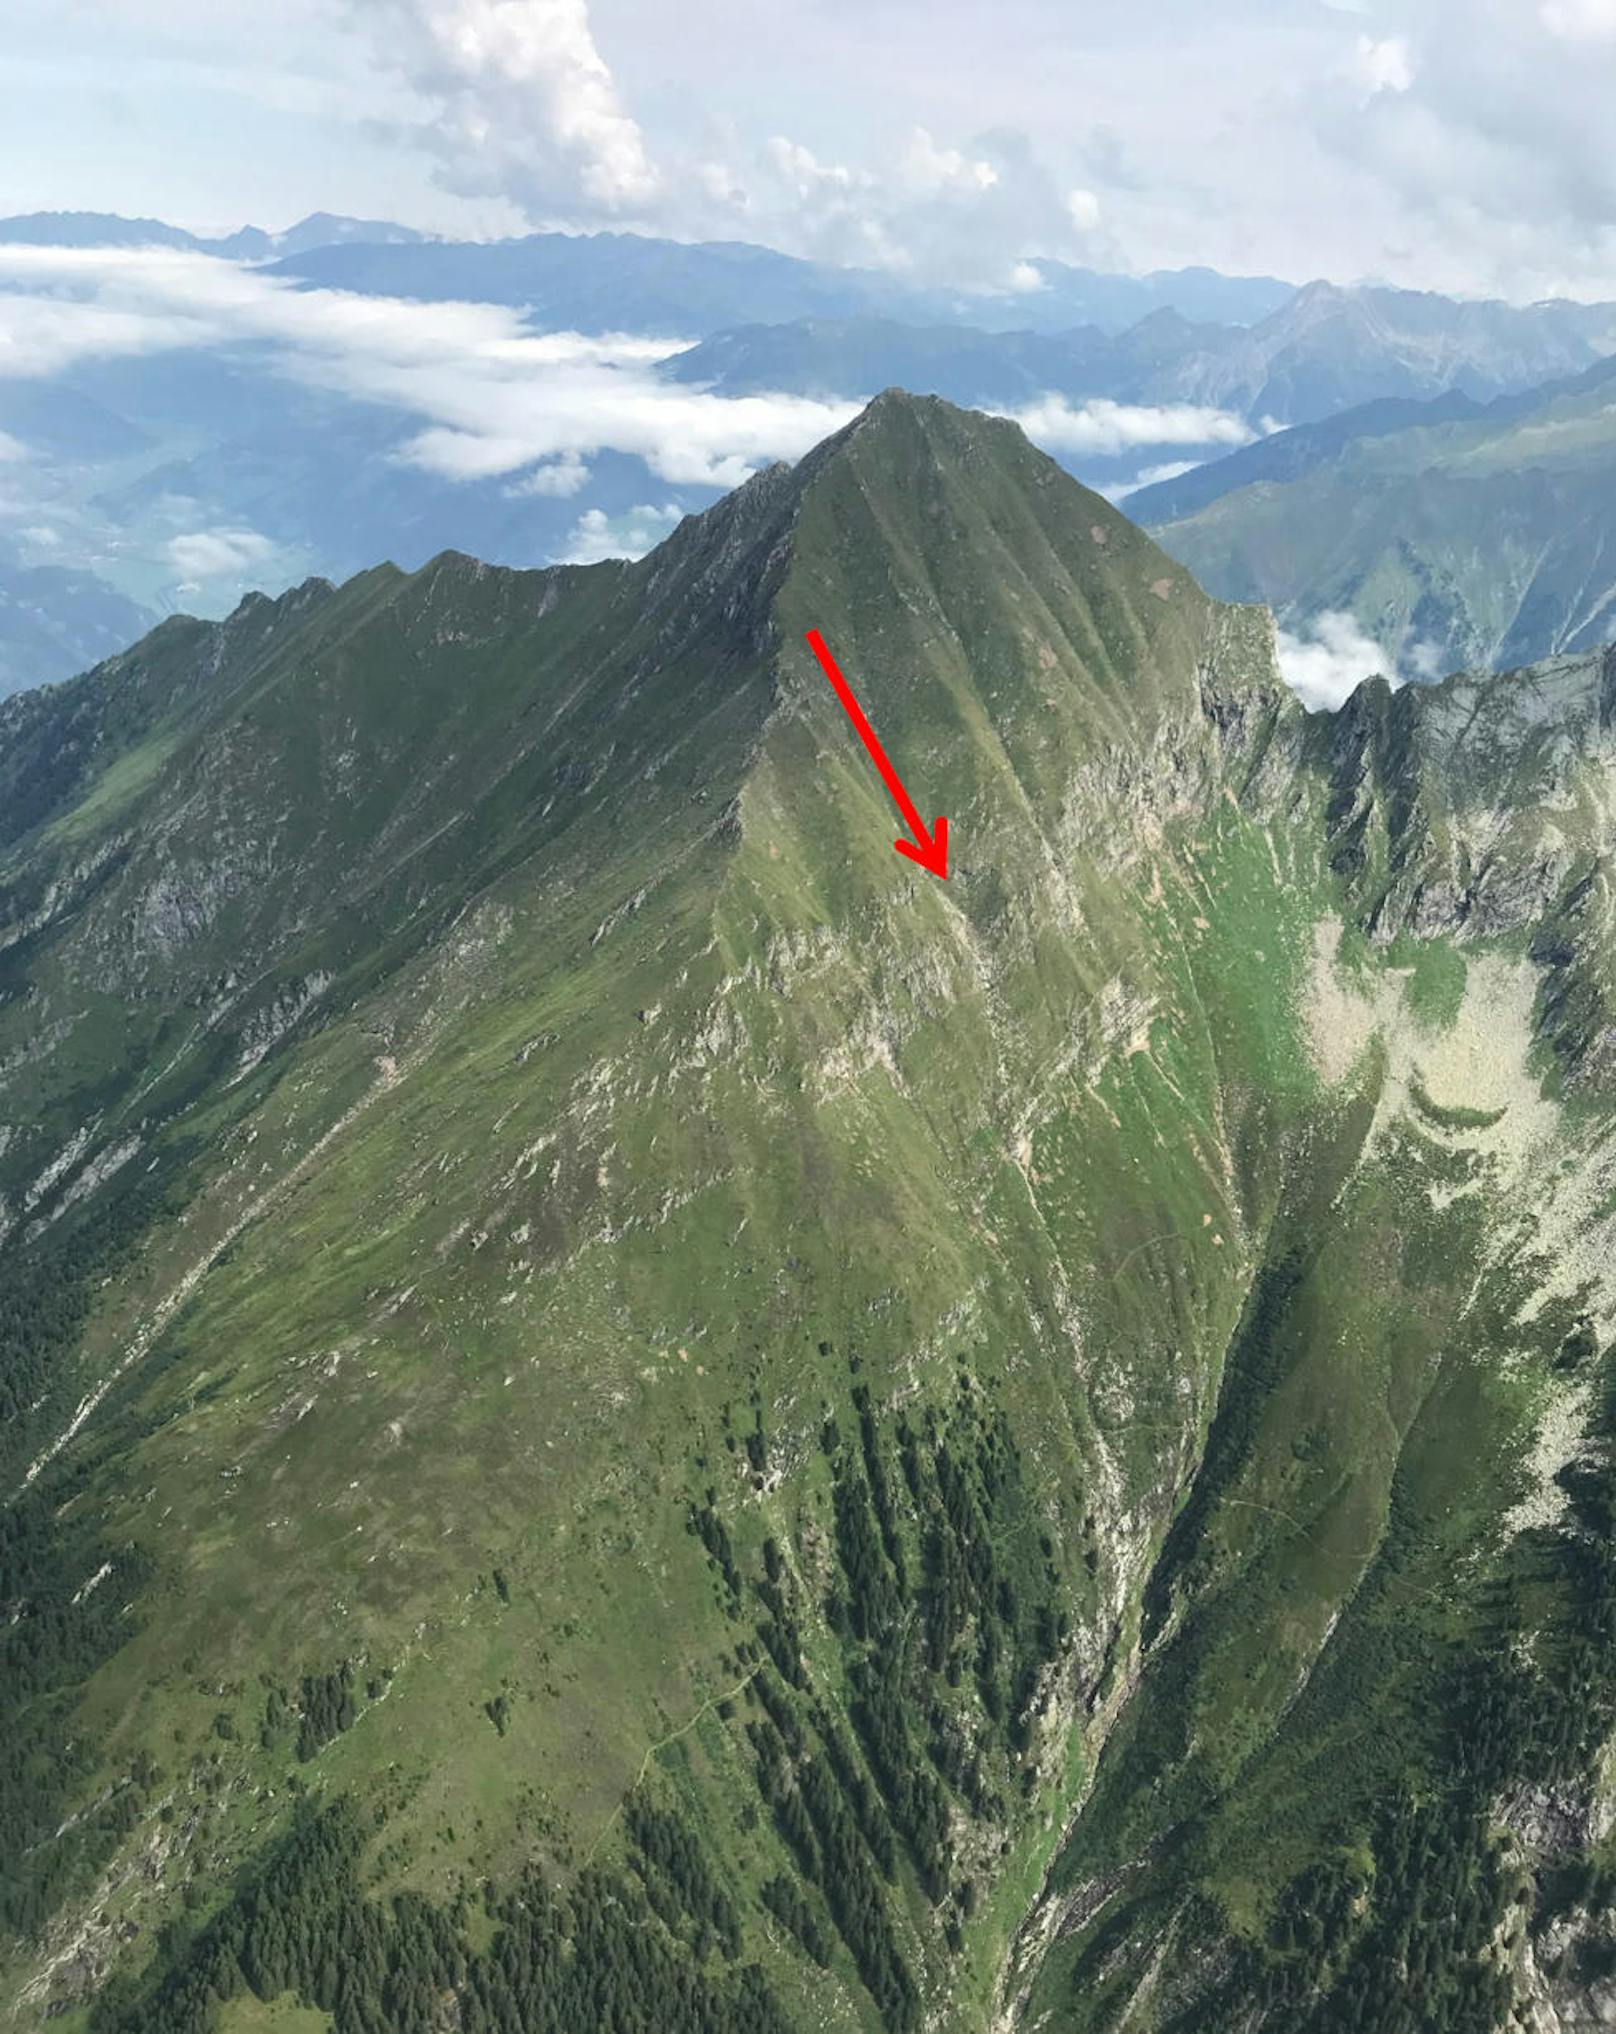 Der Paragleiter aus Deutschland war am 23. August 2019 nach einer Klettertour auf den Dristner im Tiroler Zillertal beim Auspacken seines Gleitschirms abgestürzt und tödlich verletzt worden.